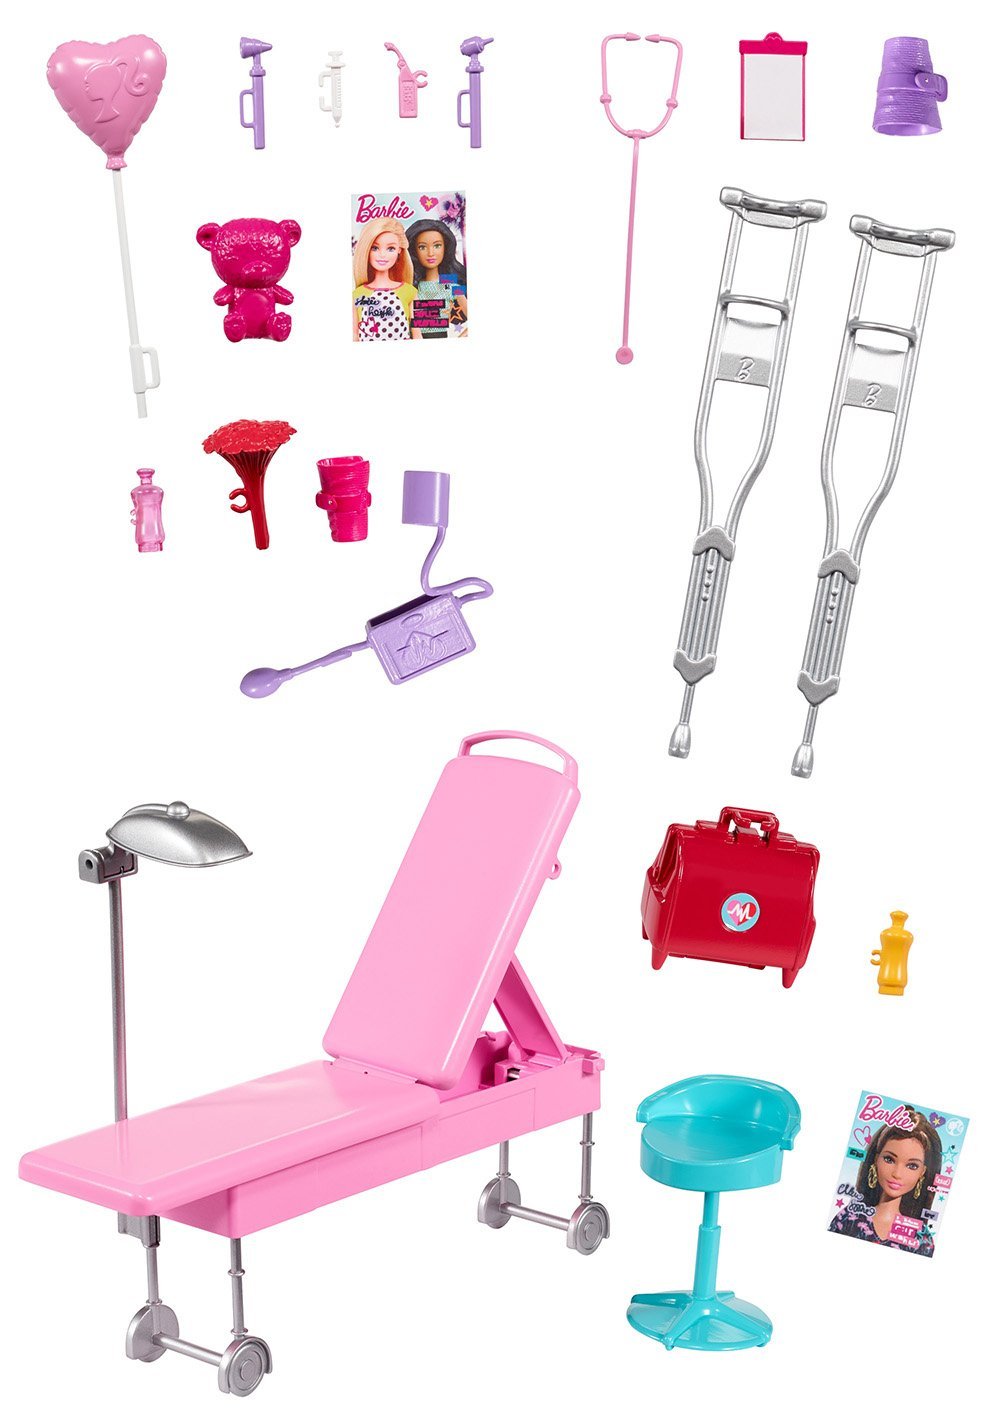 Машина скорой помощи из серии Barbie®  